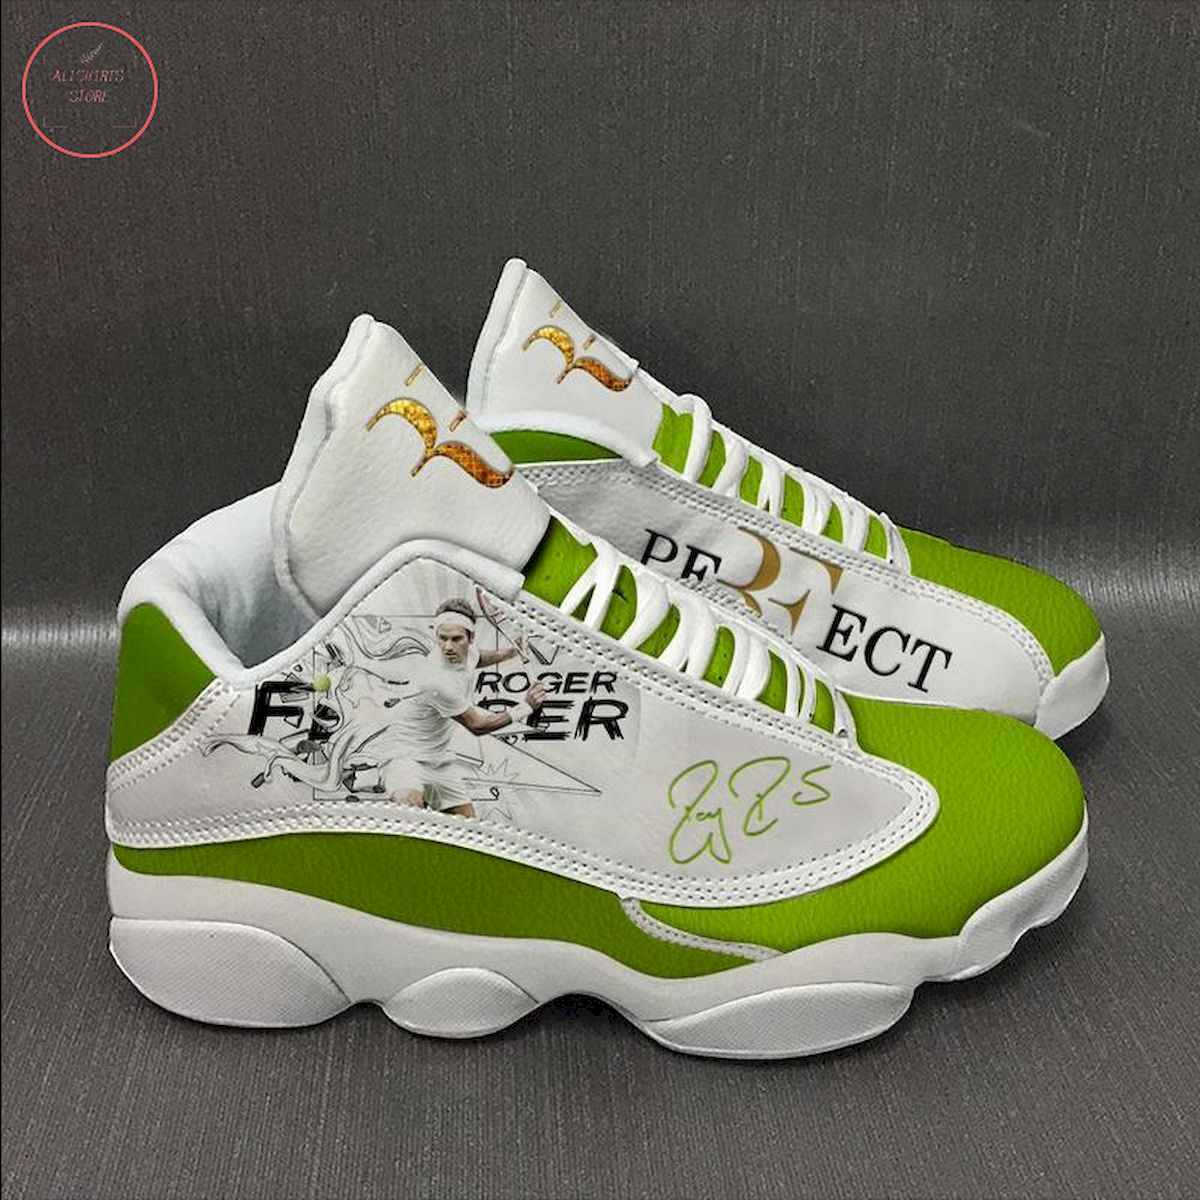 Roger Federer Air Jordan 13 Sneaker Shoes